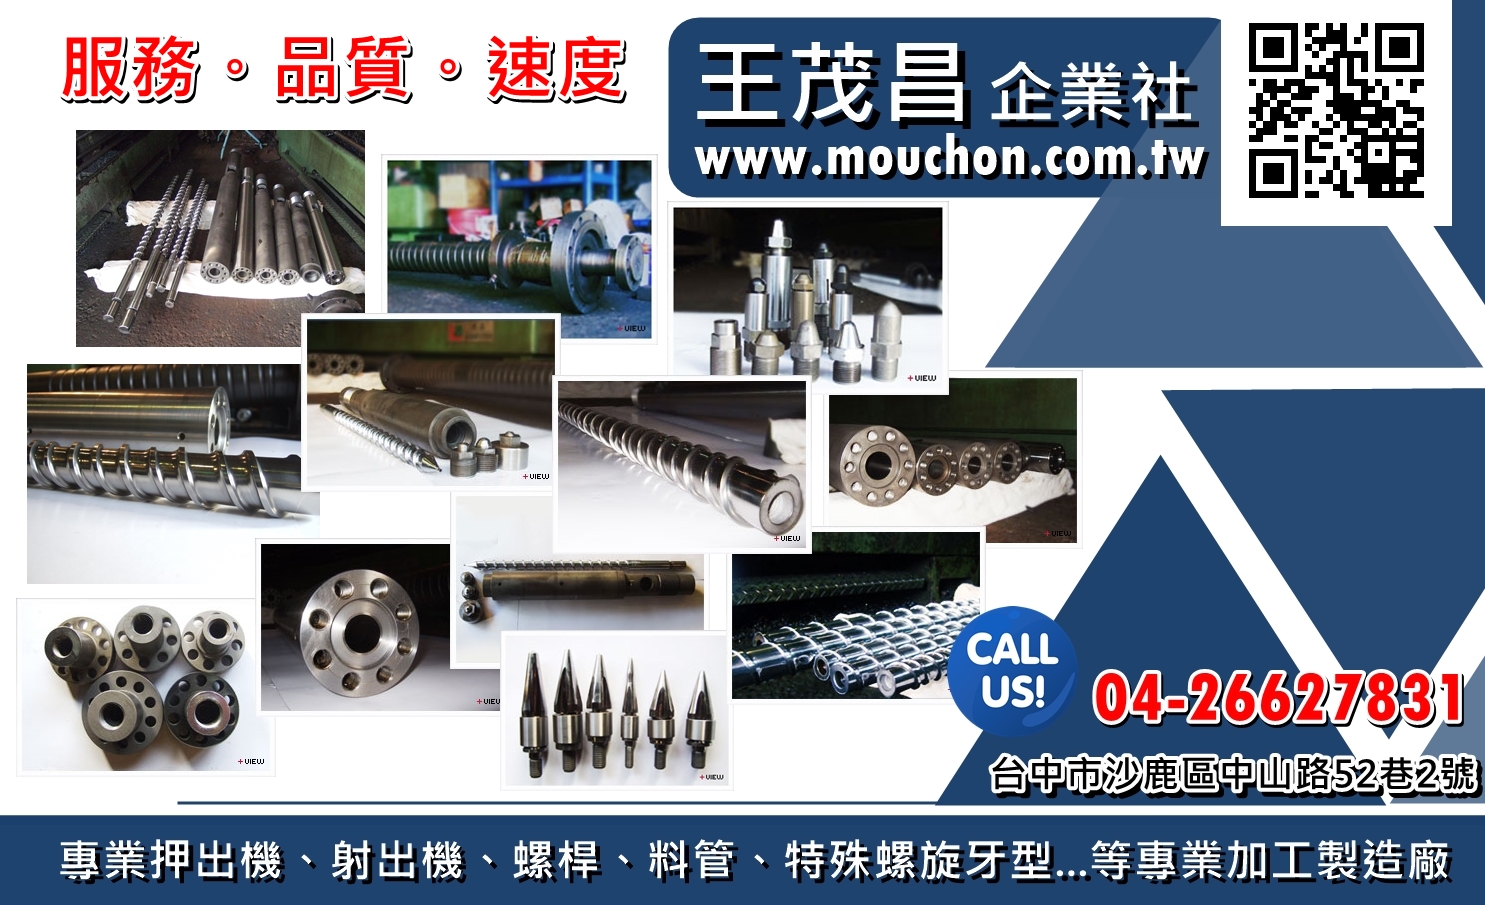 王茂昌企業社~專業押出機、射出機、螺桿、料管、特殊螺旋牙型...等專業加工製造廠。